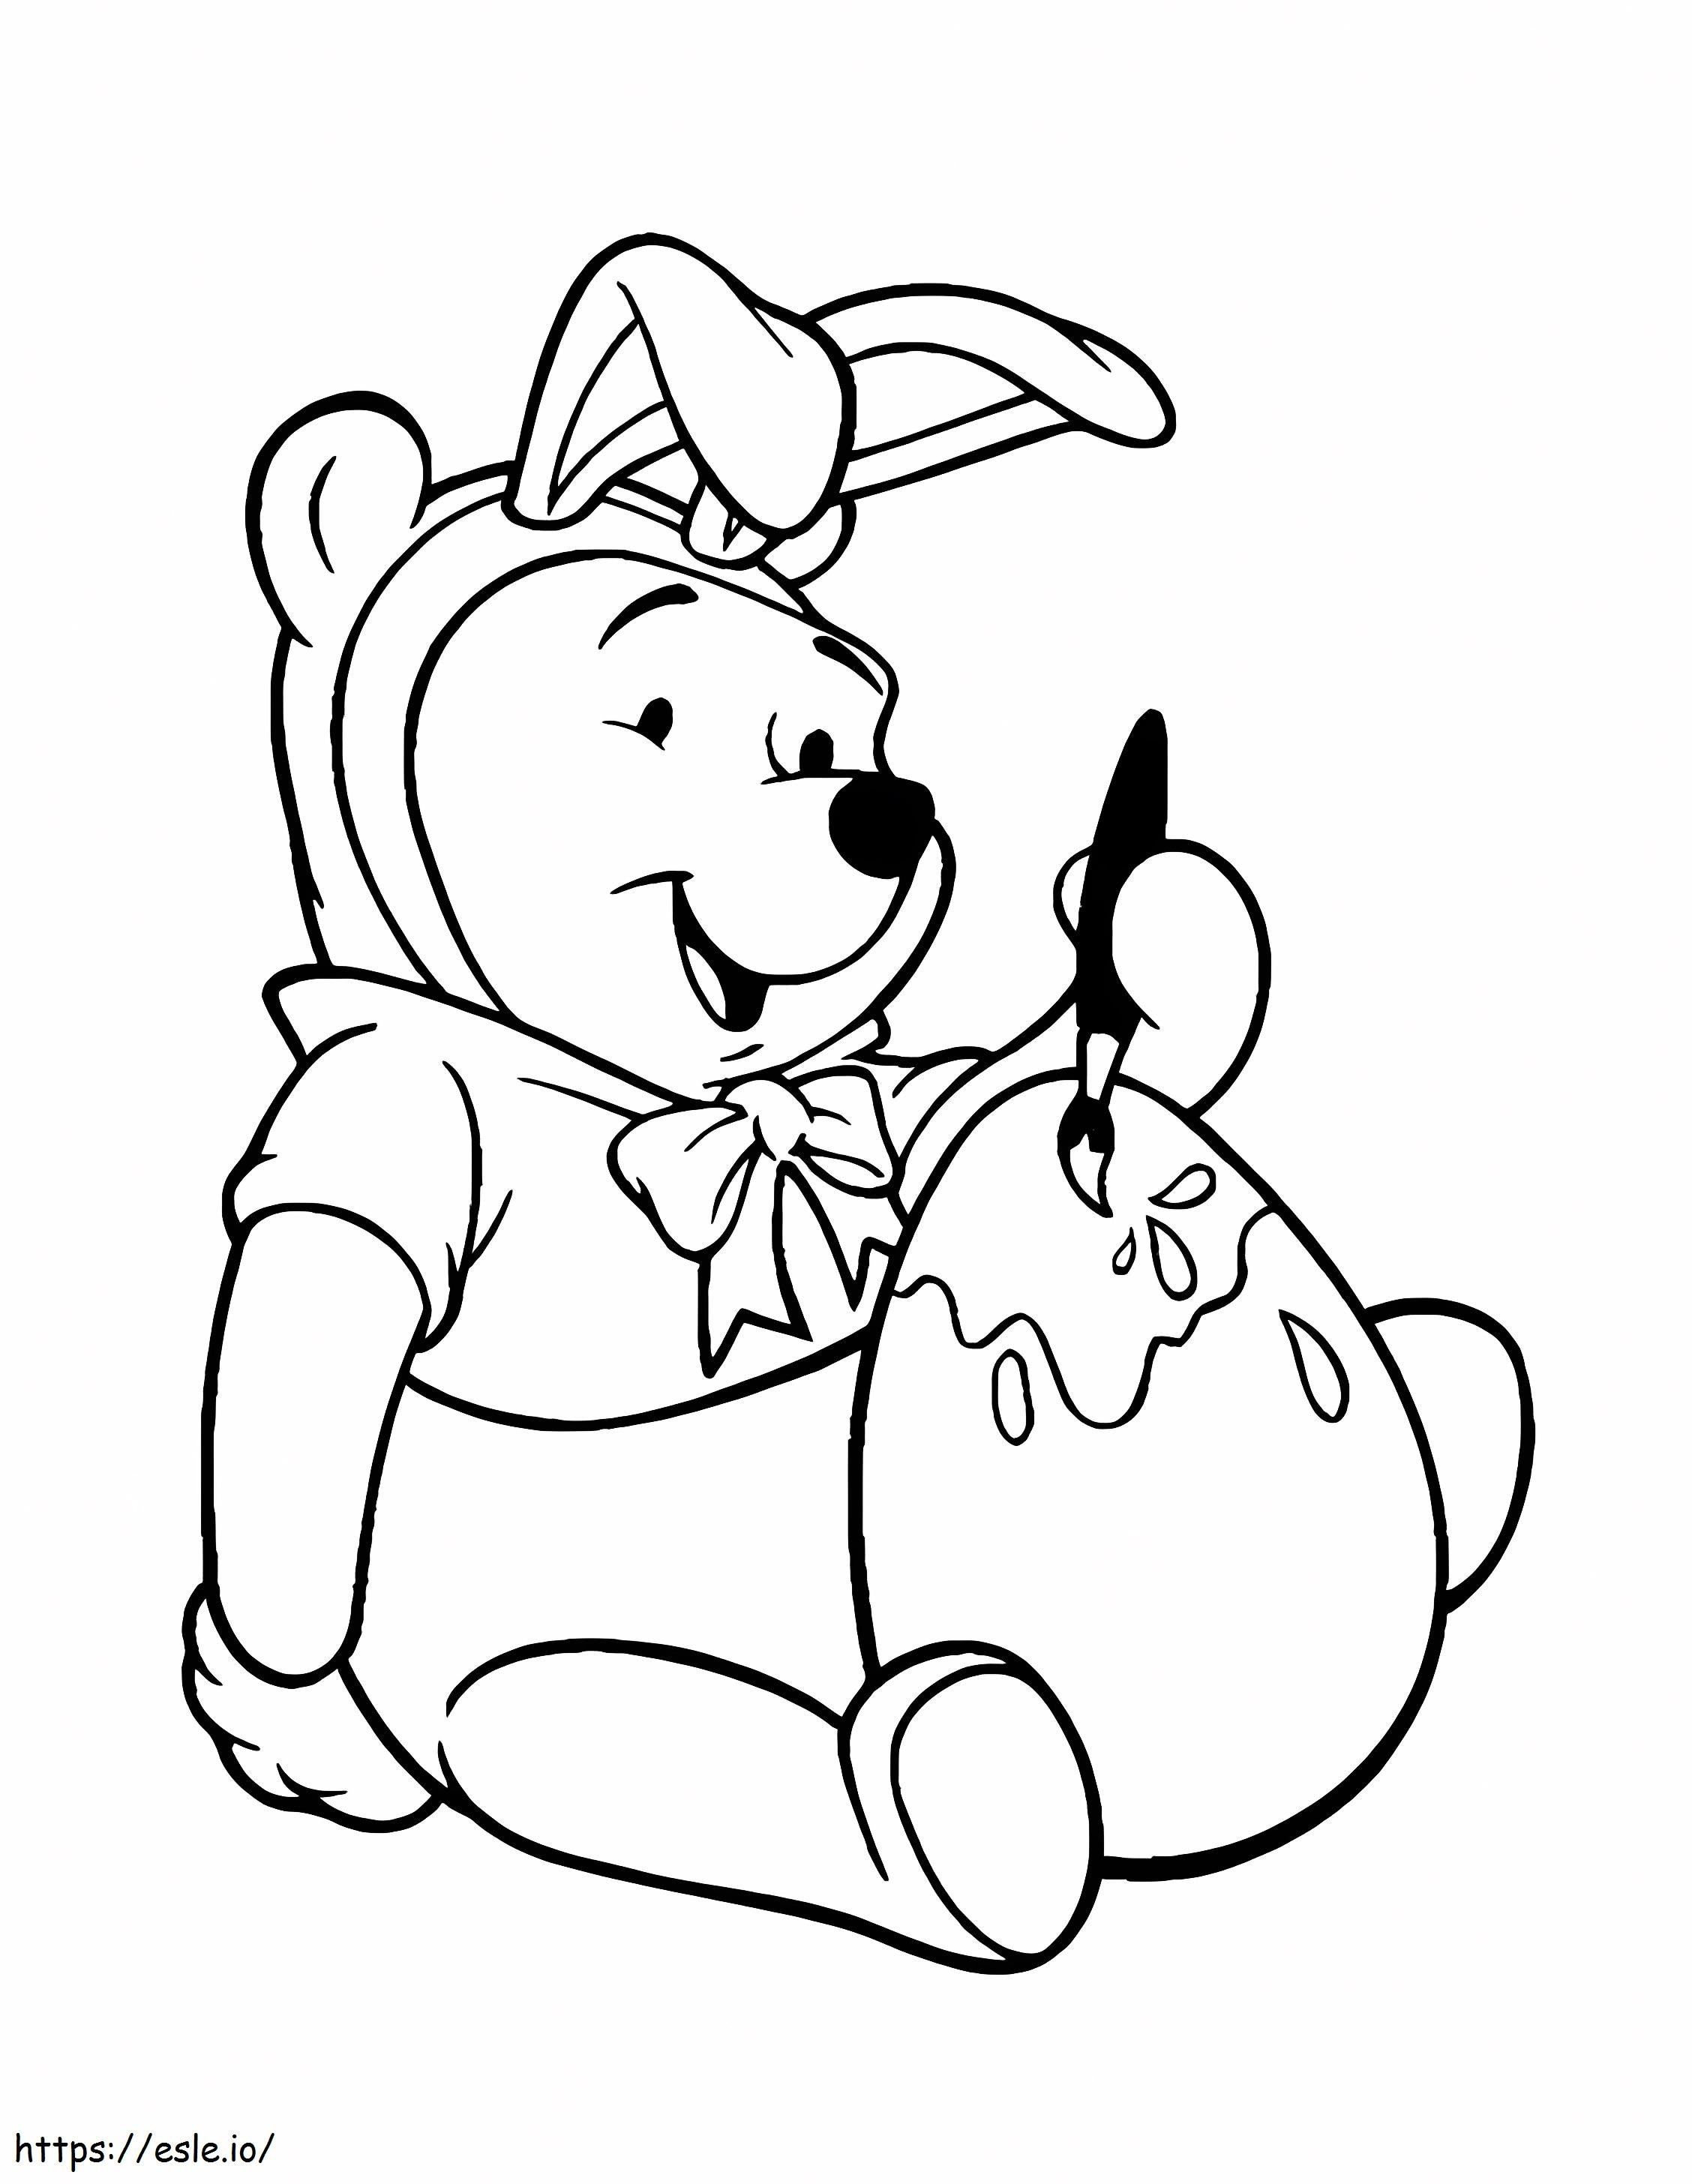 Lustiger Winnie Of The Pooh ausmalbilder